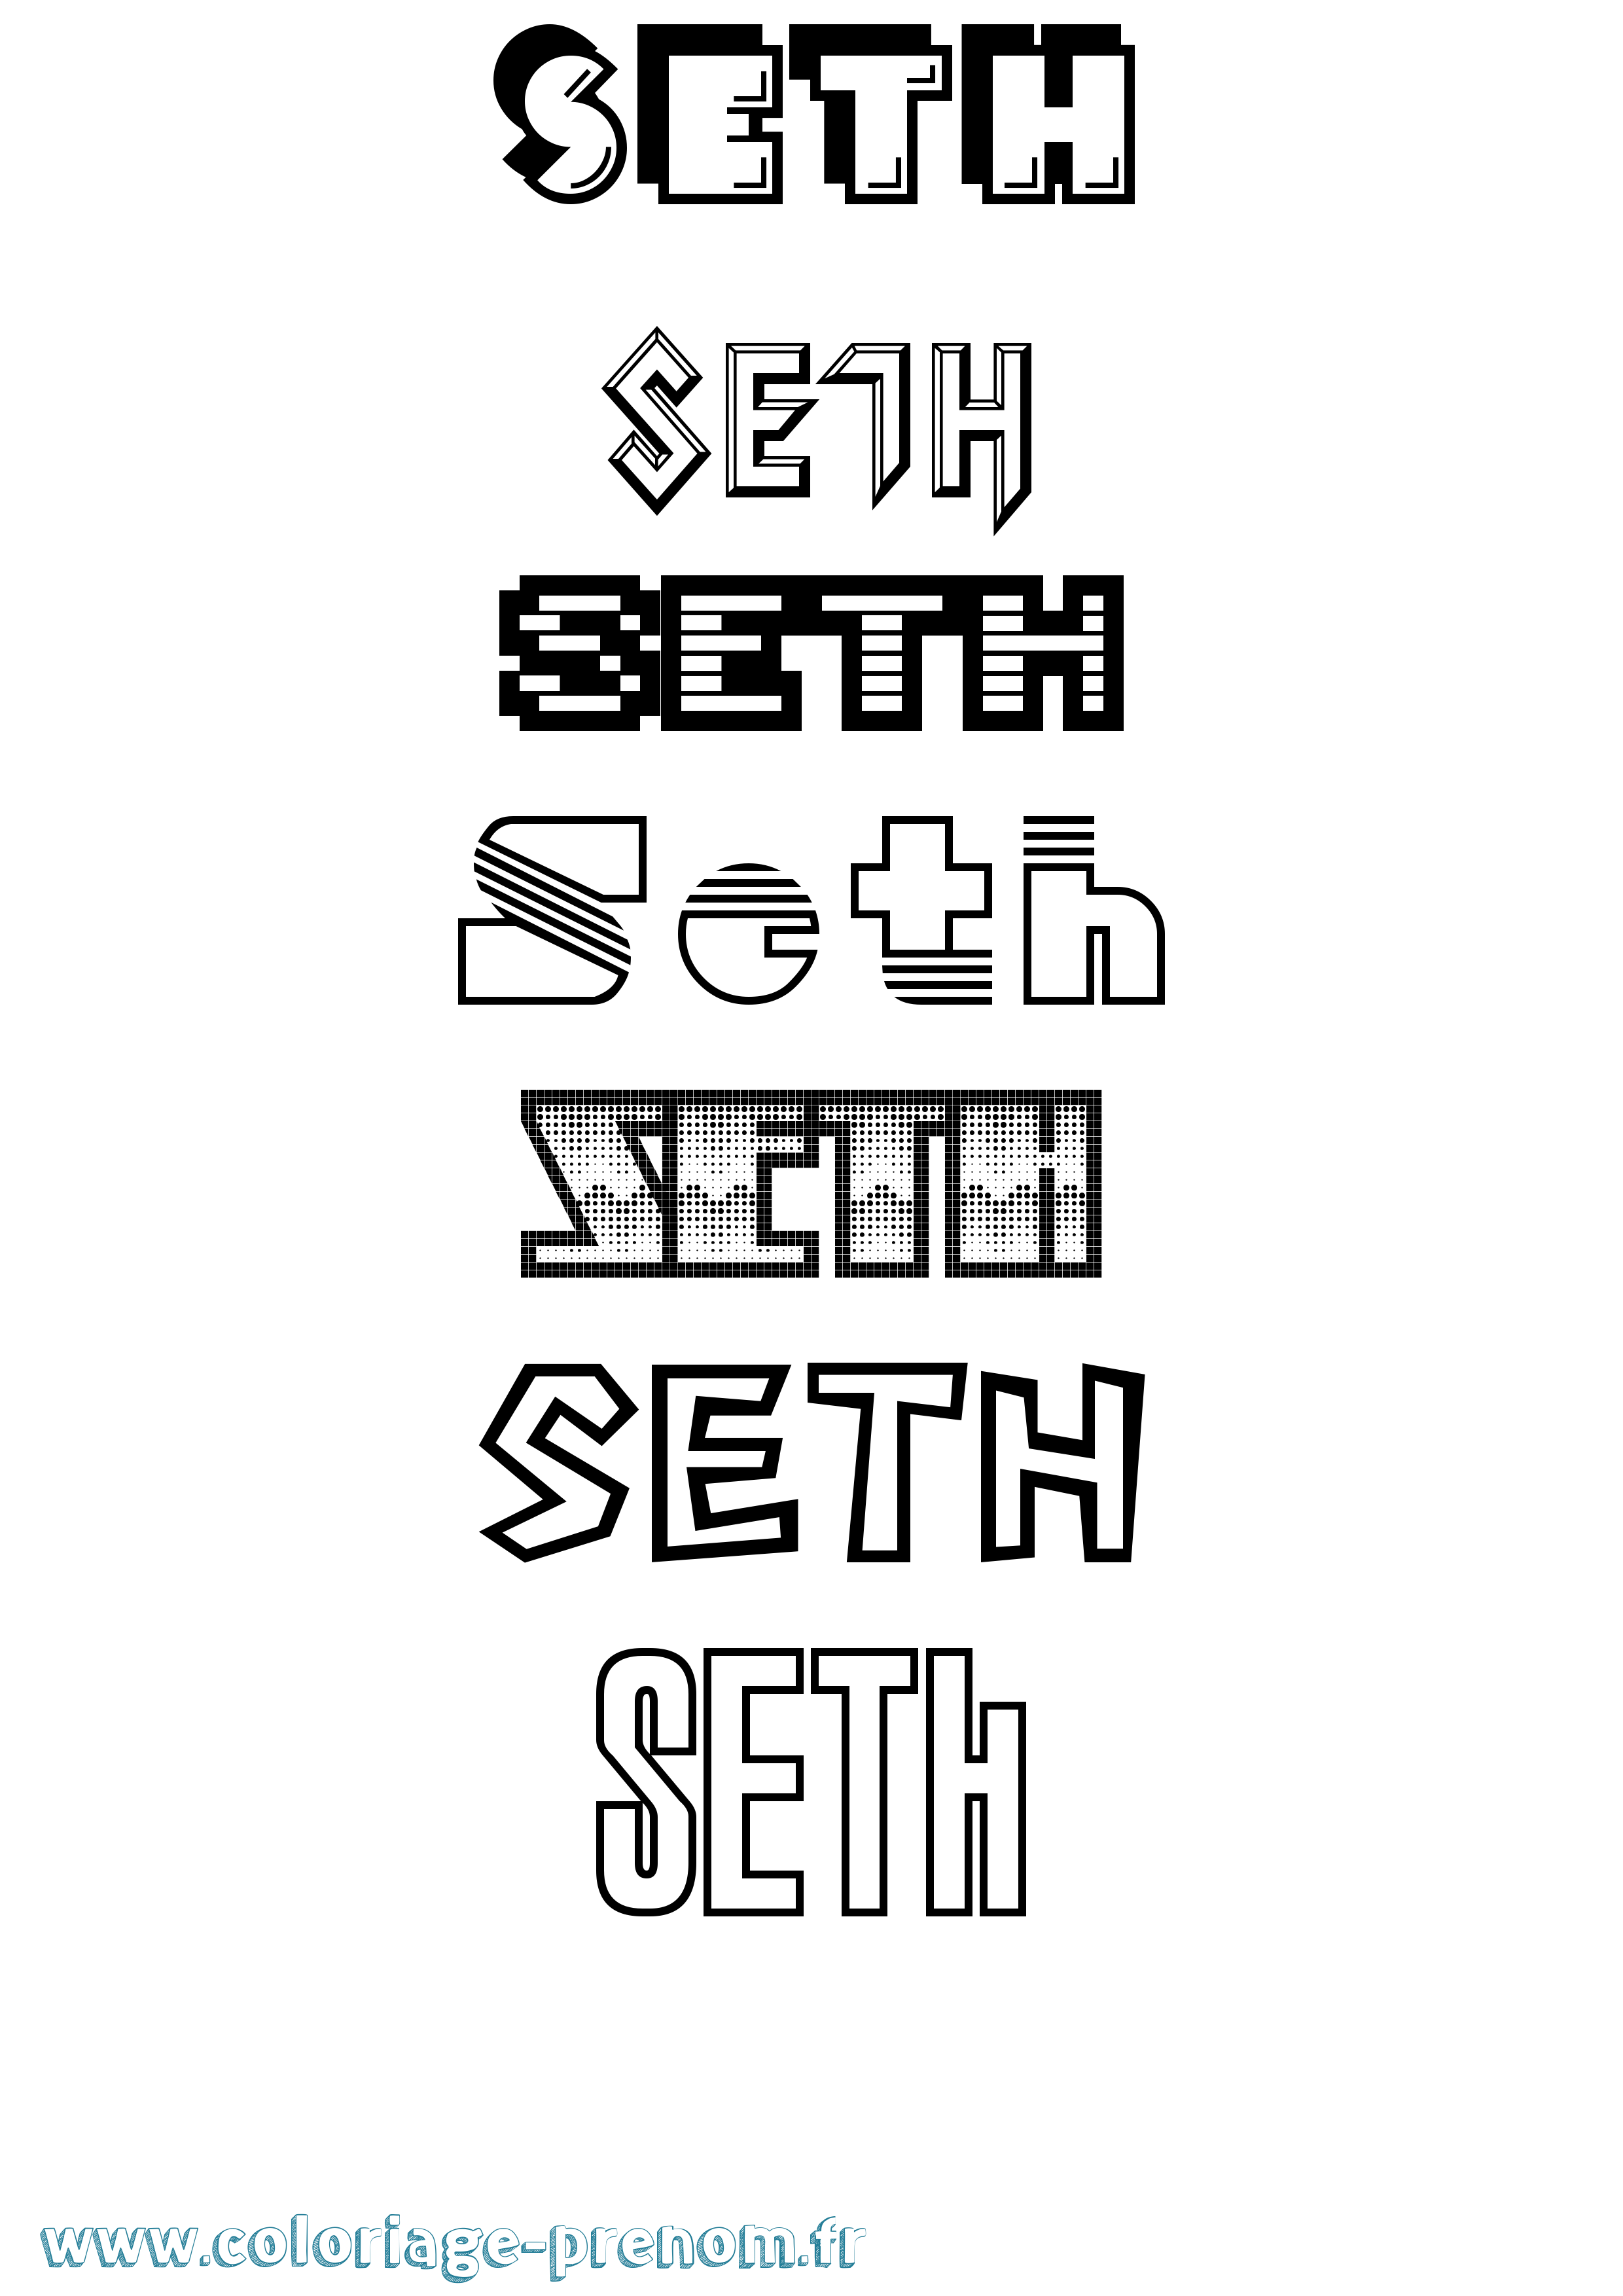 Coloriage prénom Seth Jeux Vidéos